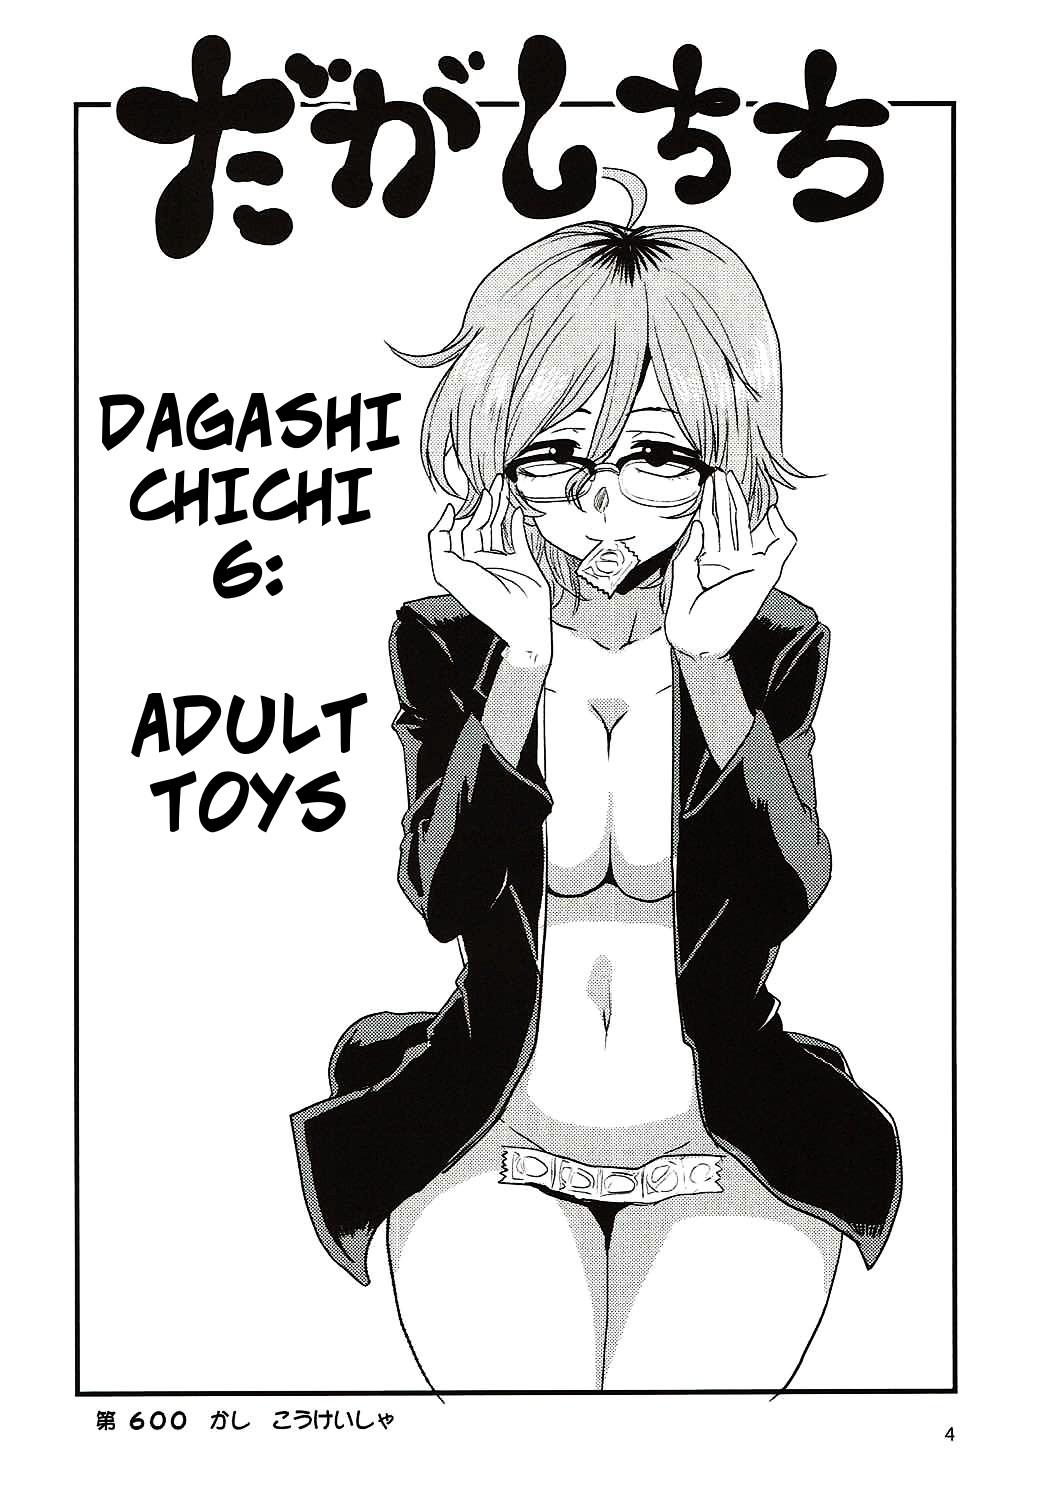 Babes Dagashi Chichi 6 - Dagashi kashi Free Amatuer Porn - Page 3